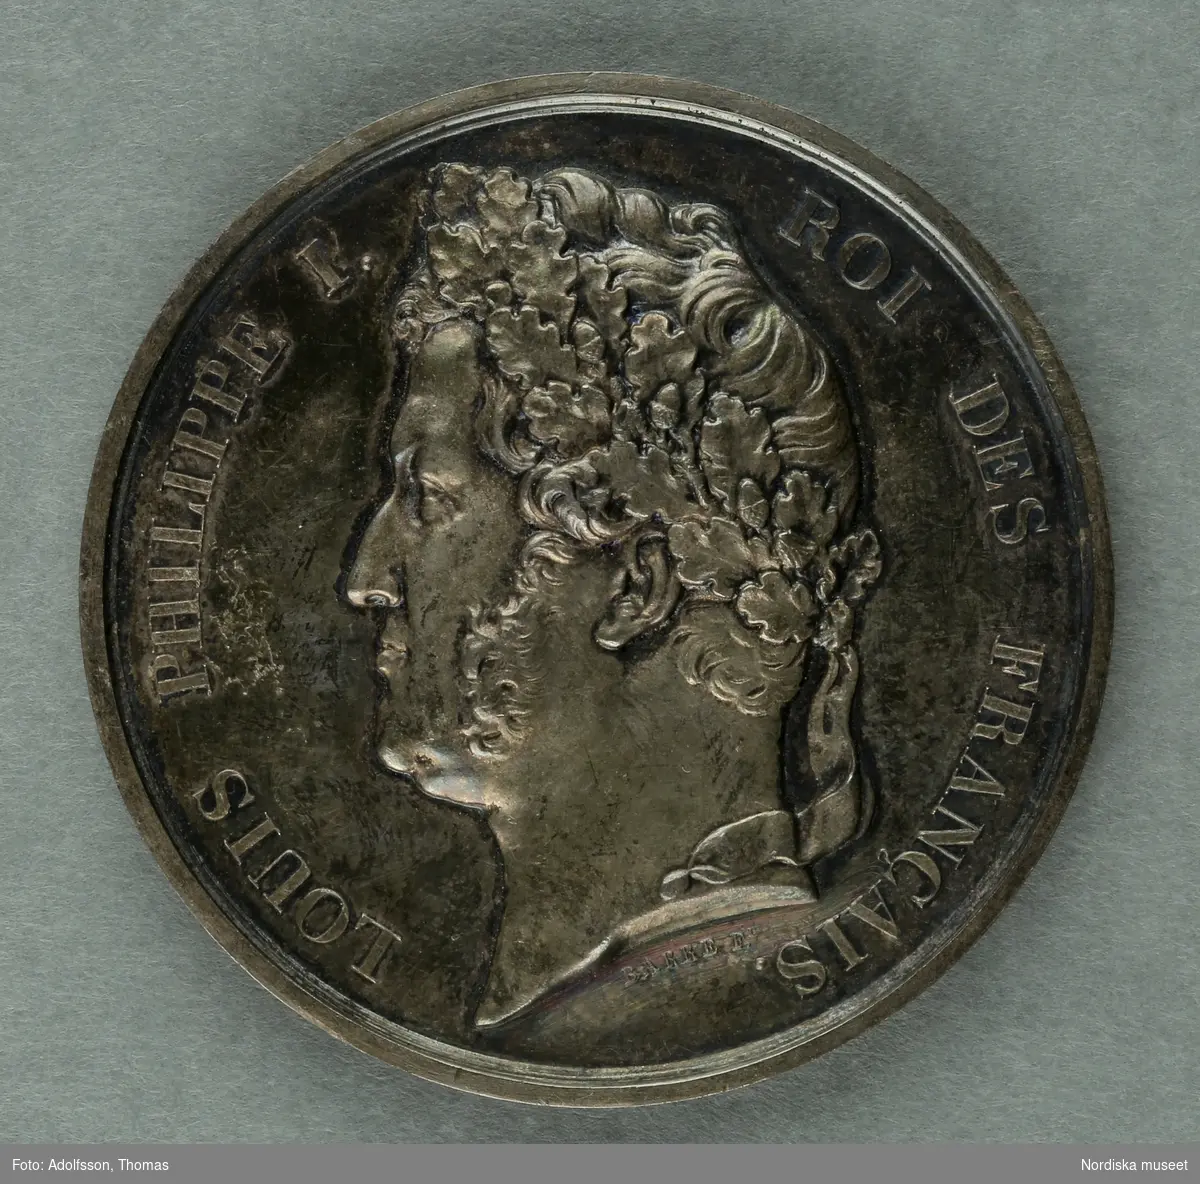 Huvudliggaren.
"Medalj. I hvit metall. Åtsidan: 'Louis Philippe I Roi des francais'. Bröstbild v.o. Under bilden: 'BARRE F.T [t:et snett ovanför F.et]. Frånsidan öfverst: 'Ville d'Arras'. Inom en eklöfskrans: 'Exposition de 1838. A. M [efter m;et svårtytt tecken] Wickemberk peintre à Paris'. Nederst utom kransen: 'Dep .T [t:et ovanför punkten] du Pas-de-Calais.'. 
Diam lin.
G. fr basaren f. Skdin. etn. saml. [=för Skandinaviska etnografiska samlingens] byggnadsfond, gm. fru Olivecrona f. Roos, i apr. 1877."